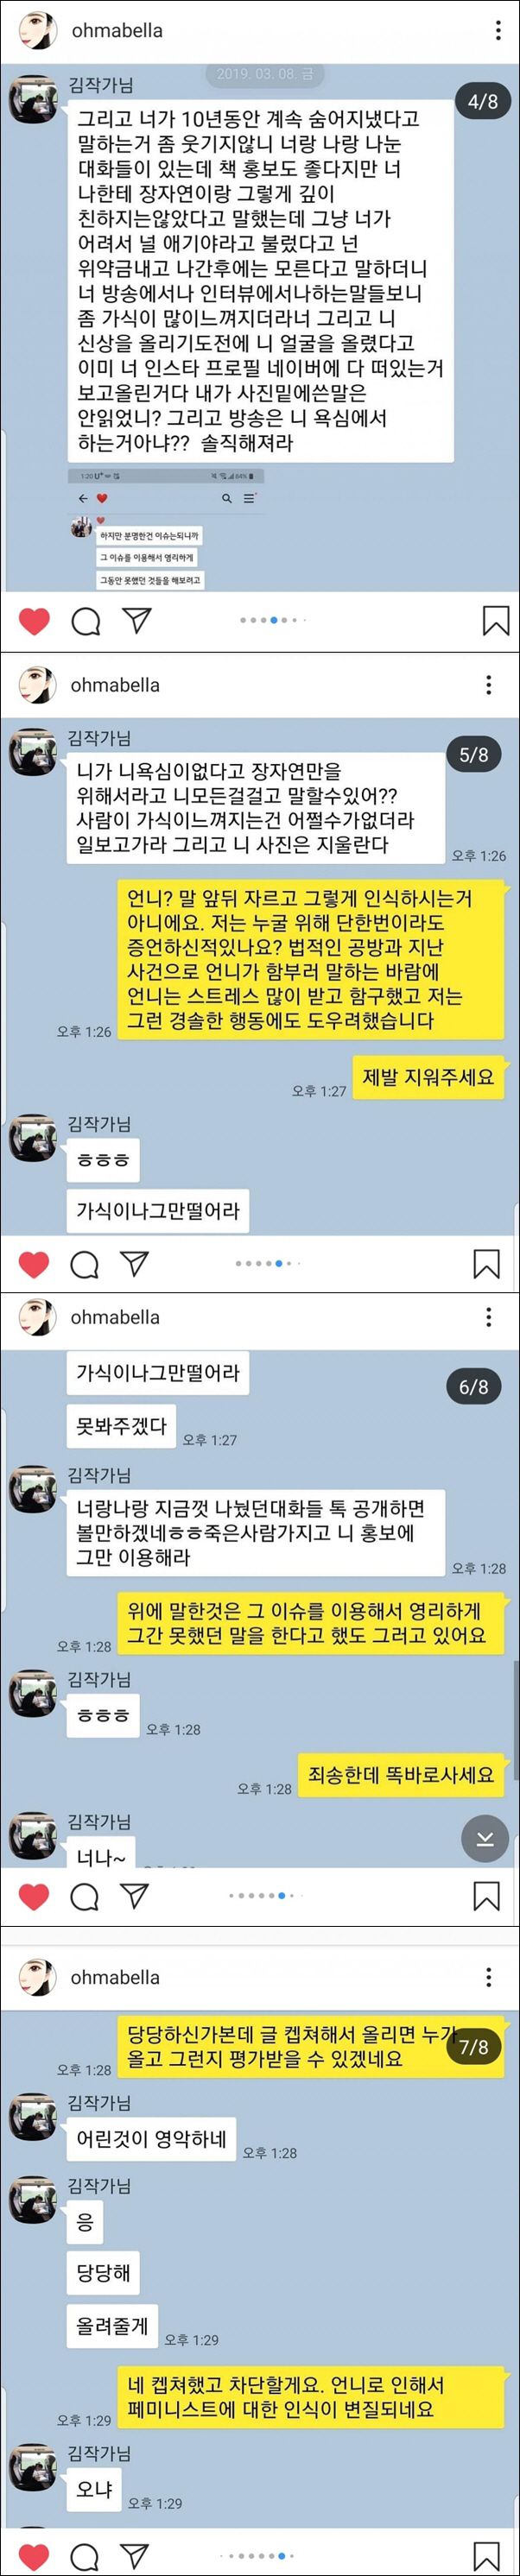 공개된 김작가와 윤지오씨와의 대화내용